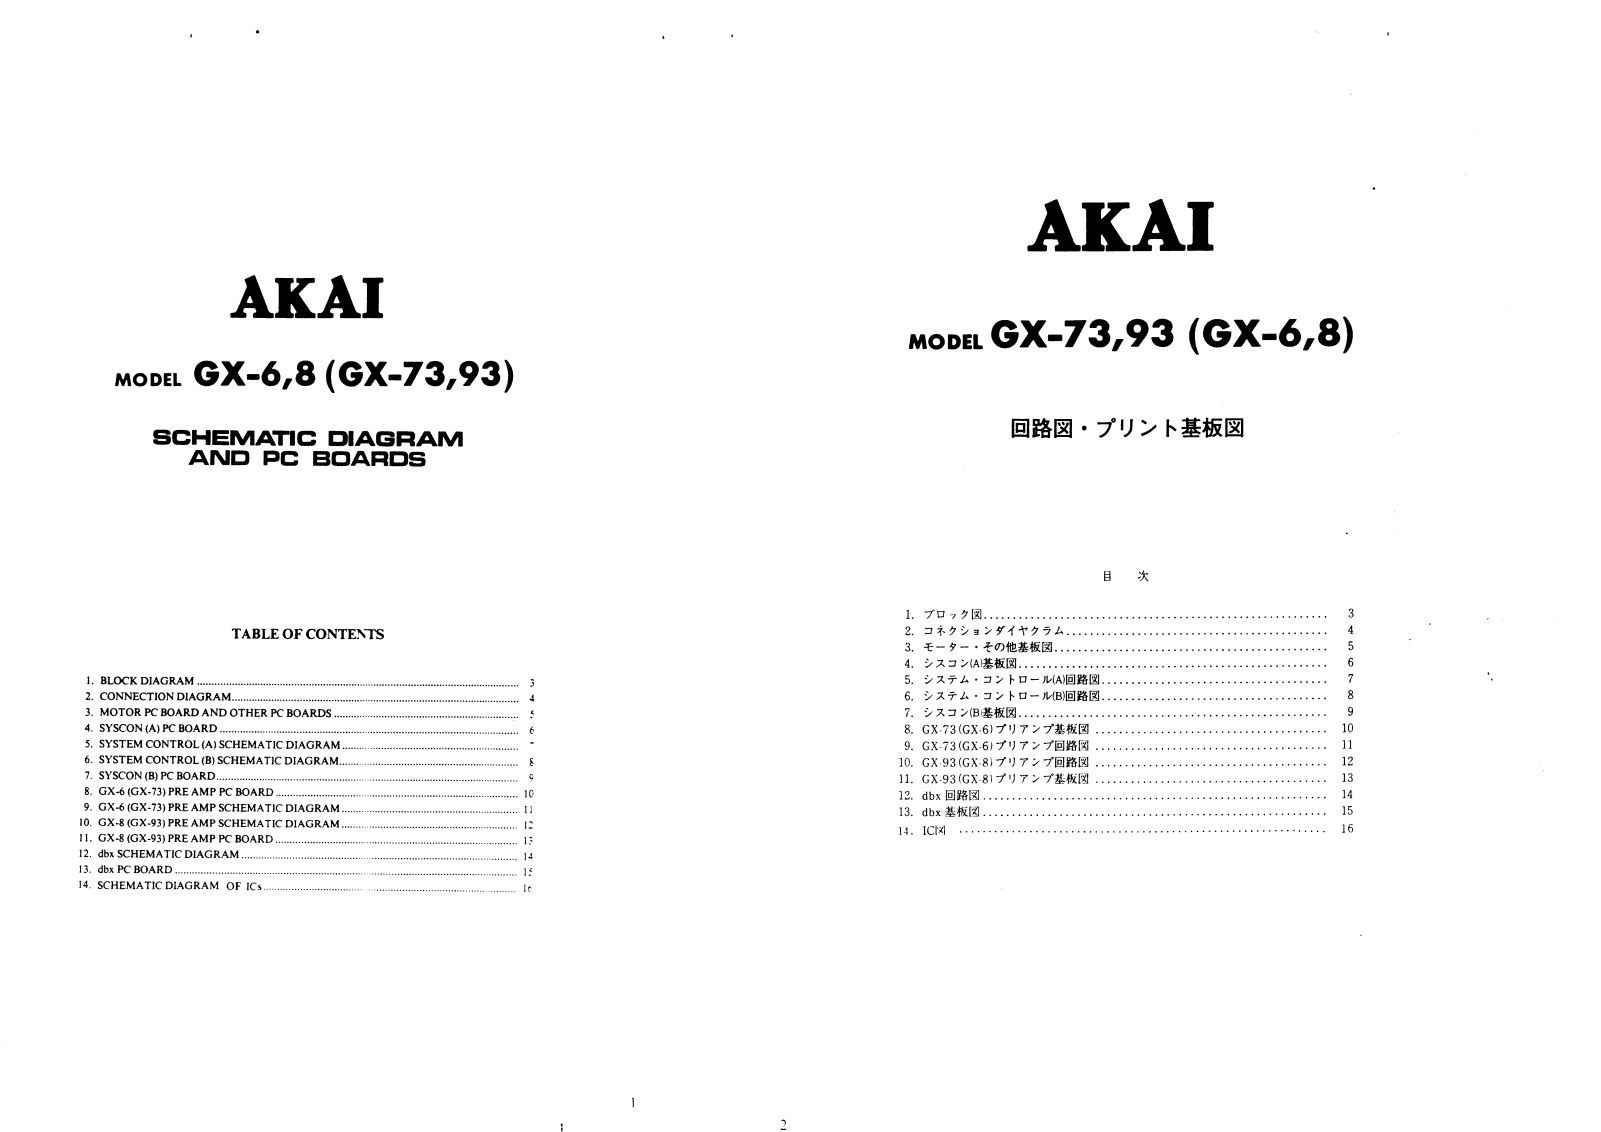 Akai GX-6, GX-73, GX-8, GX-93 Schematic